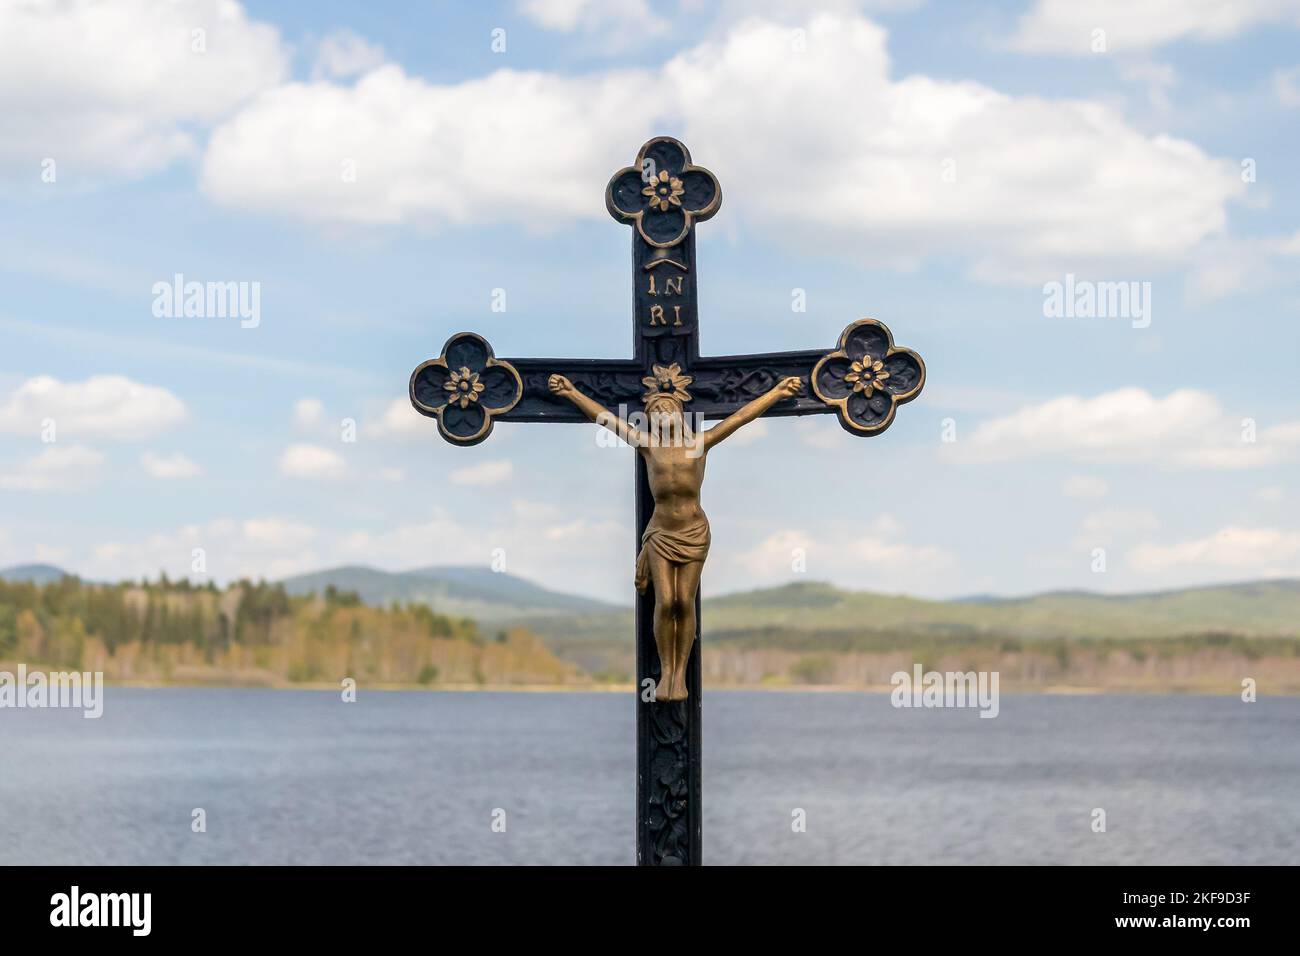 Crocifisso - statua di Gesù Cristo su una croce, sullo sfondo del paesaggio con acqua, colline e cielo blu con le nuvole Foto Stock